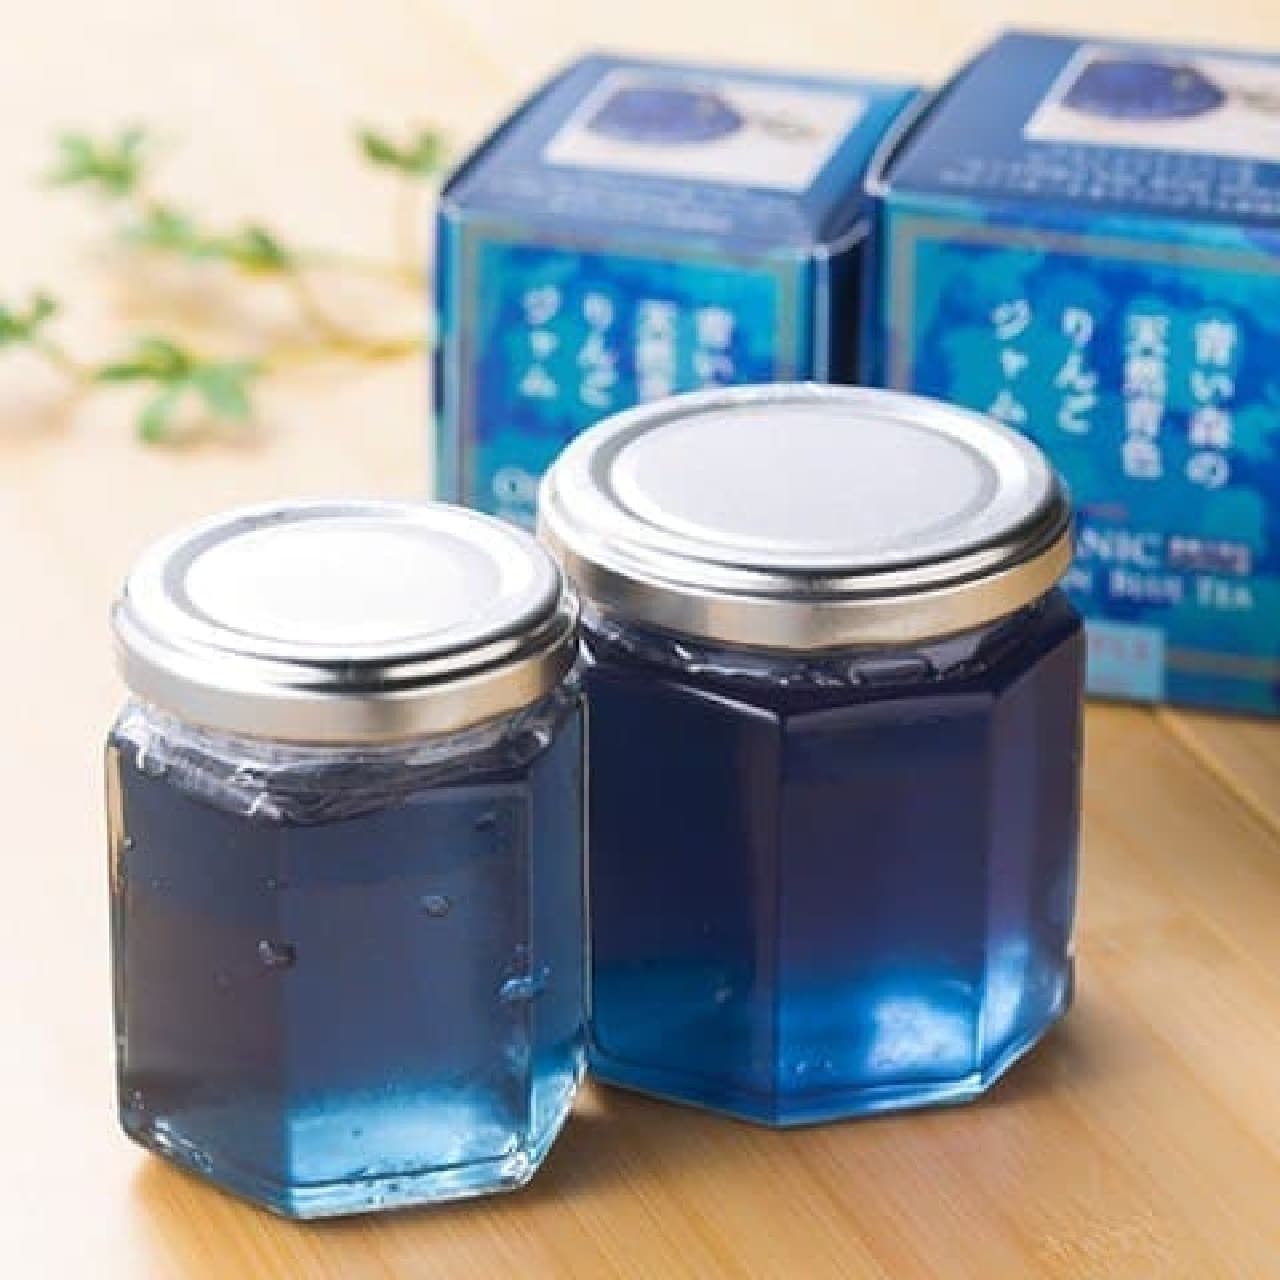 Villevan's blue jam